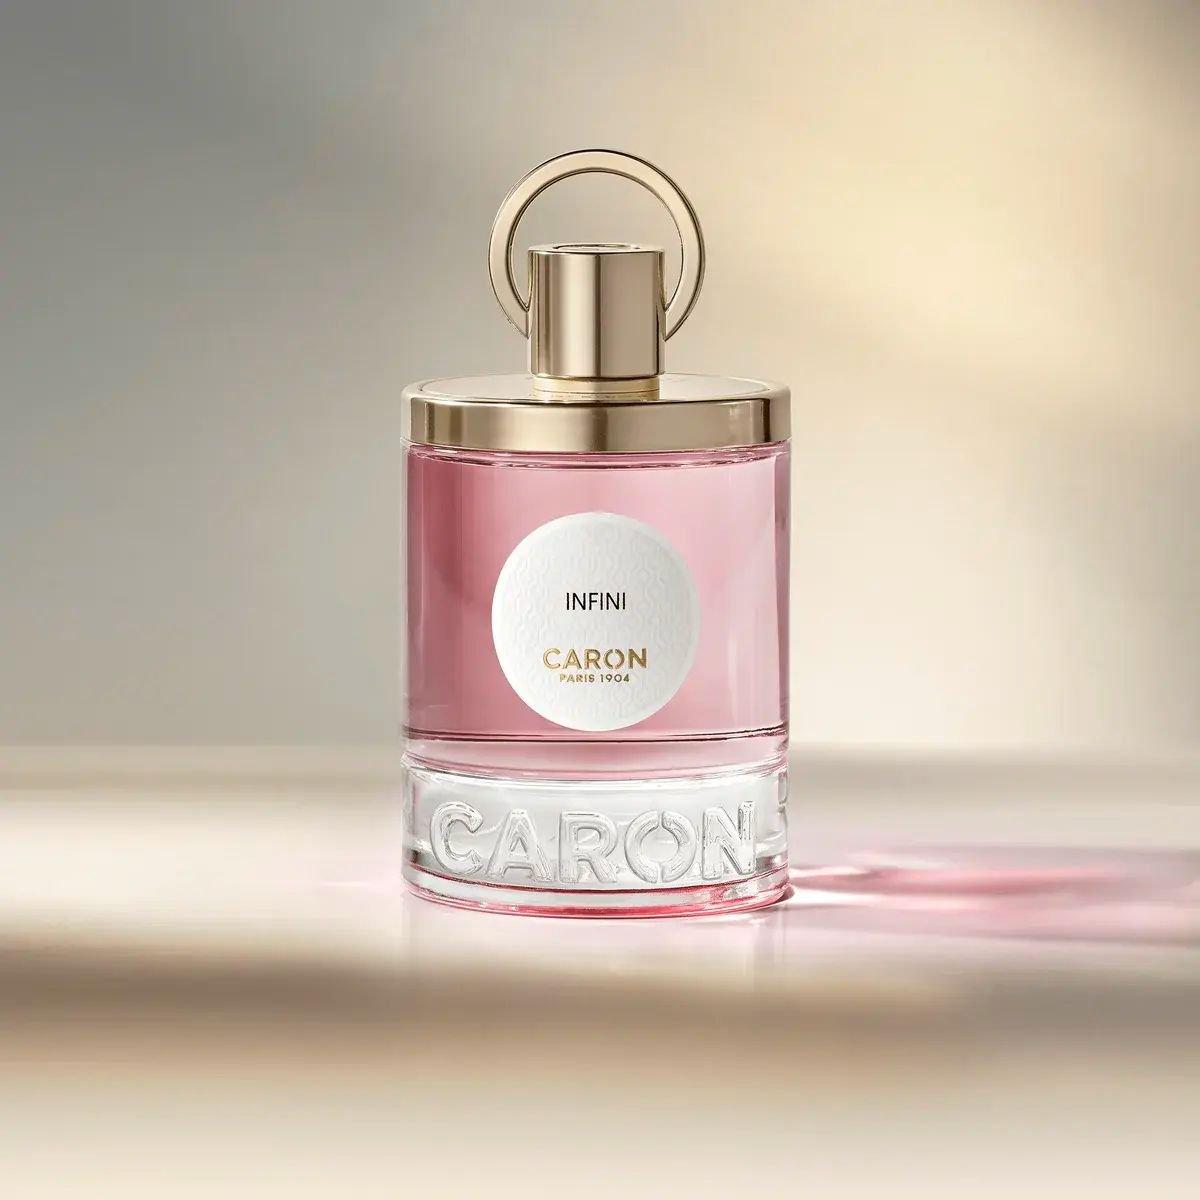 Caron - Infini 100 ml | Perfume Lounge